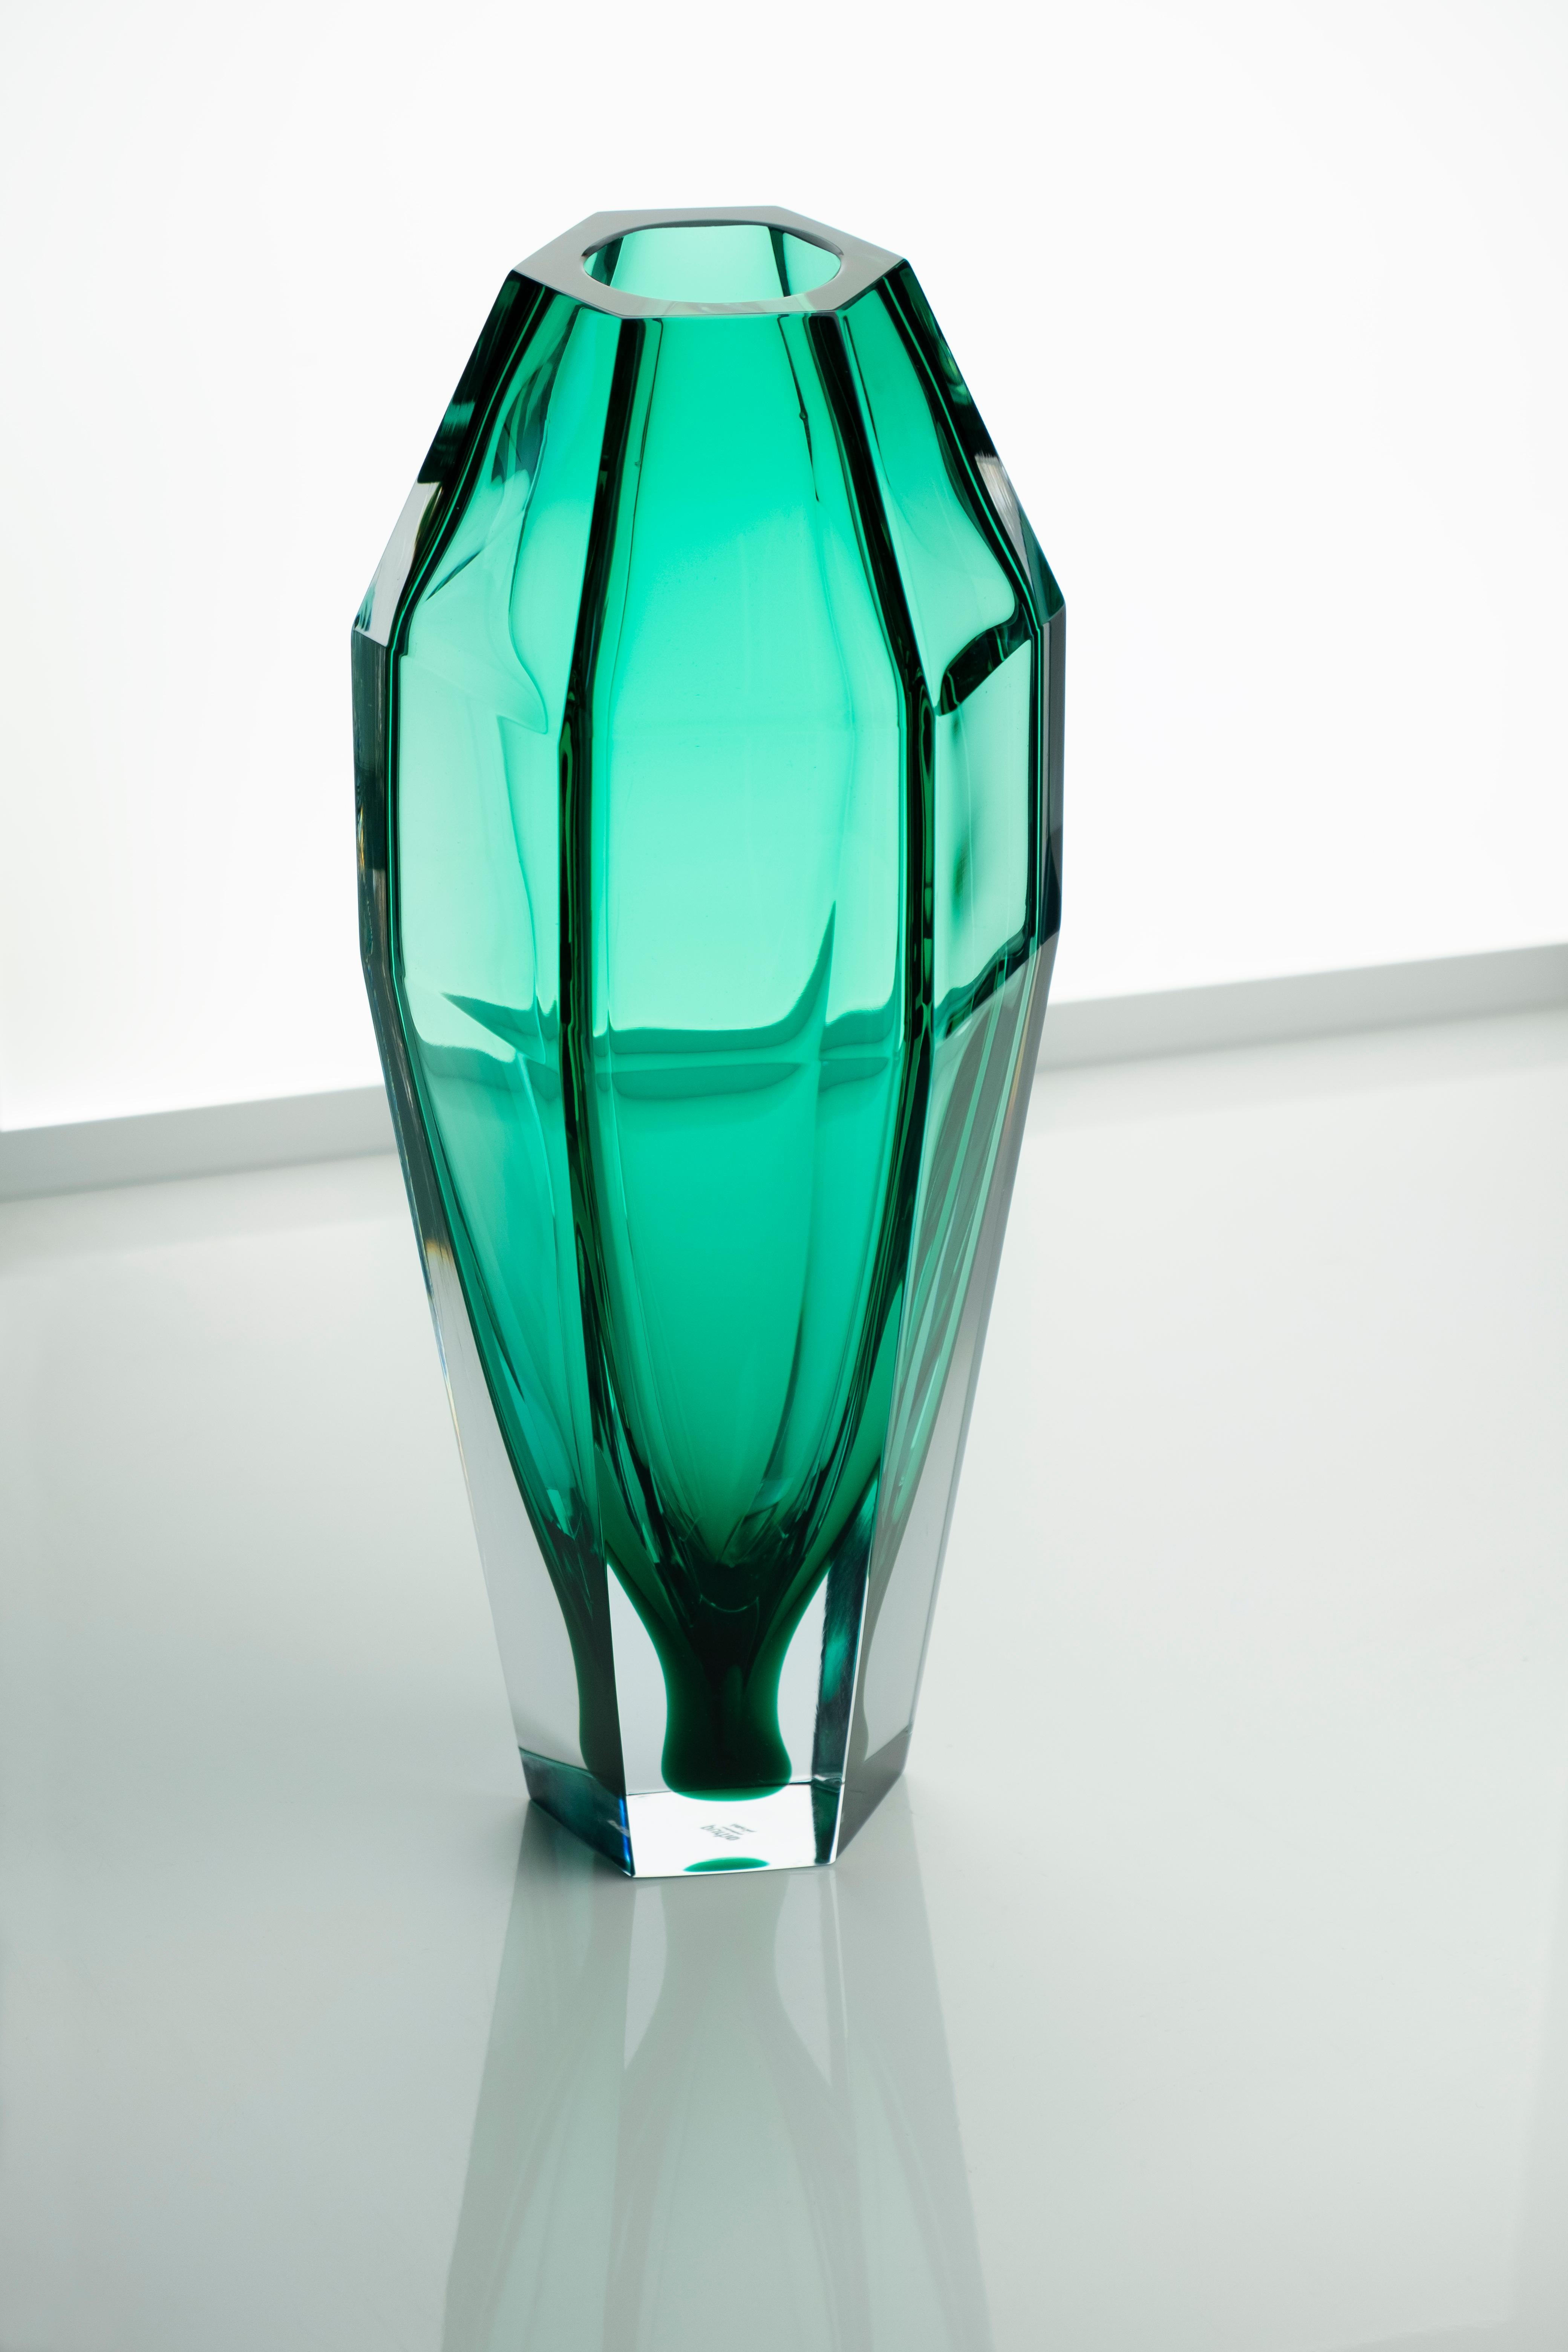 21. Jahrhundert Alessandro Mendini, Transparente Vase GEMELLO, Muranoglas.
Mit den beiden Vasen Gemello und Gemella, die von Alessandro Mendini entworfen wurden, setzt Purho die Suche nach Produkten mit komplementären Formen fort. Die Vasen, die